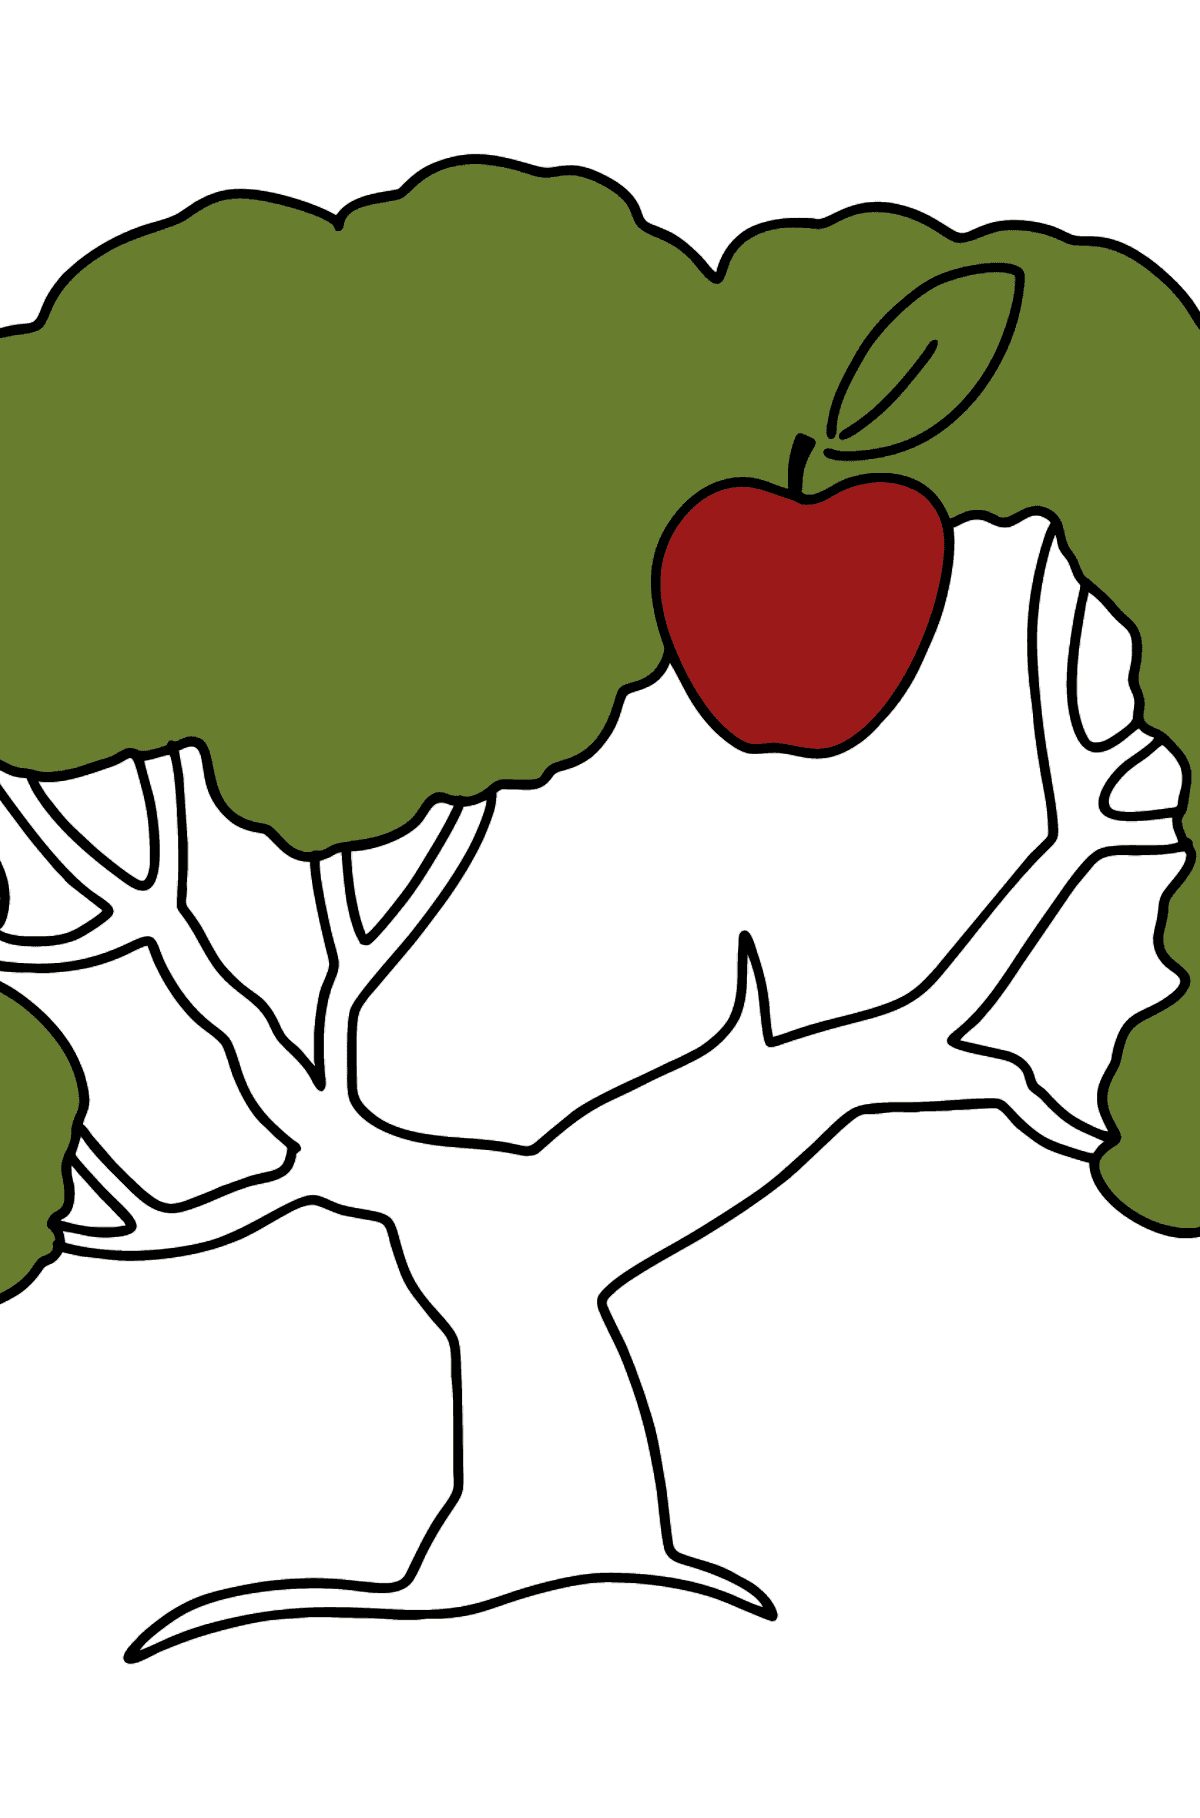 Apfelbaum zum Ausmalen - Malvorlagen für Kinder